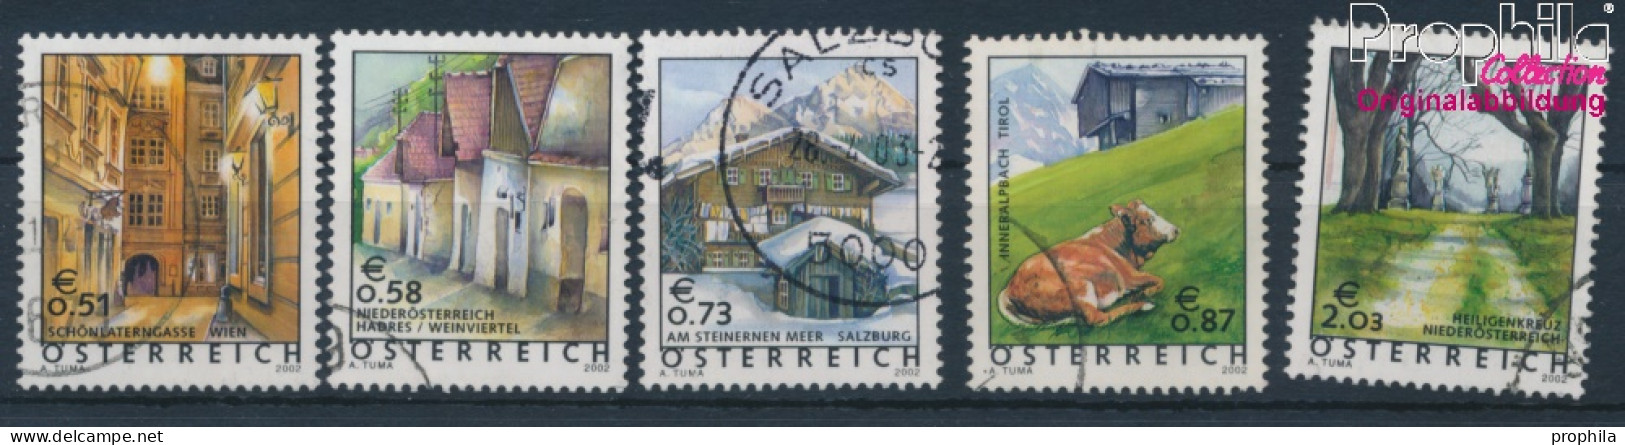 Österreich 2363-2367 (kompl.Ausg.) Gestempelt 2002 Freimarken (10404375 - Oblitérés